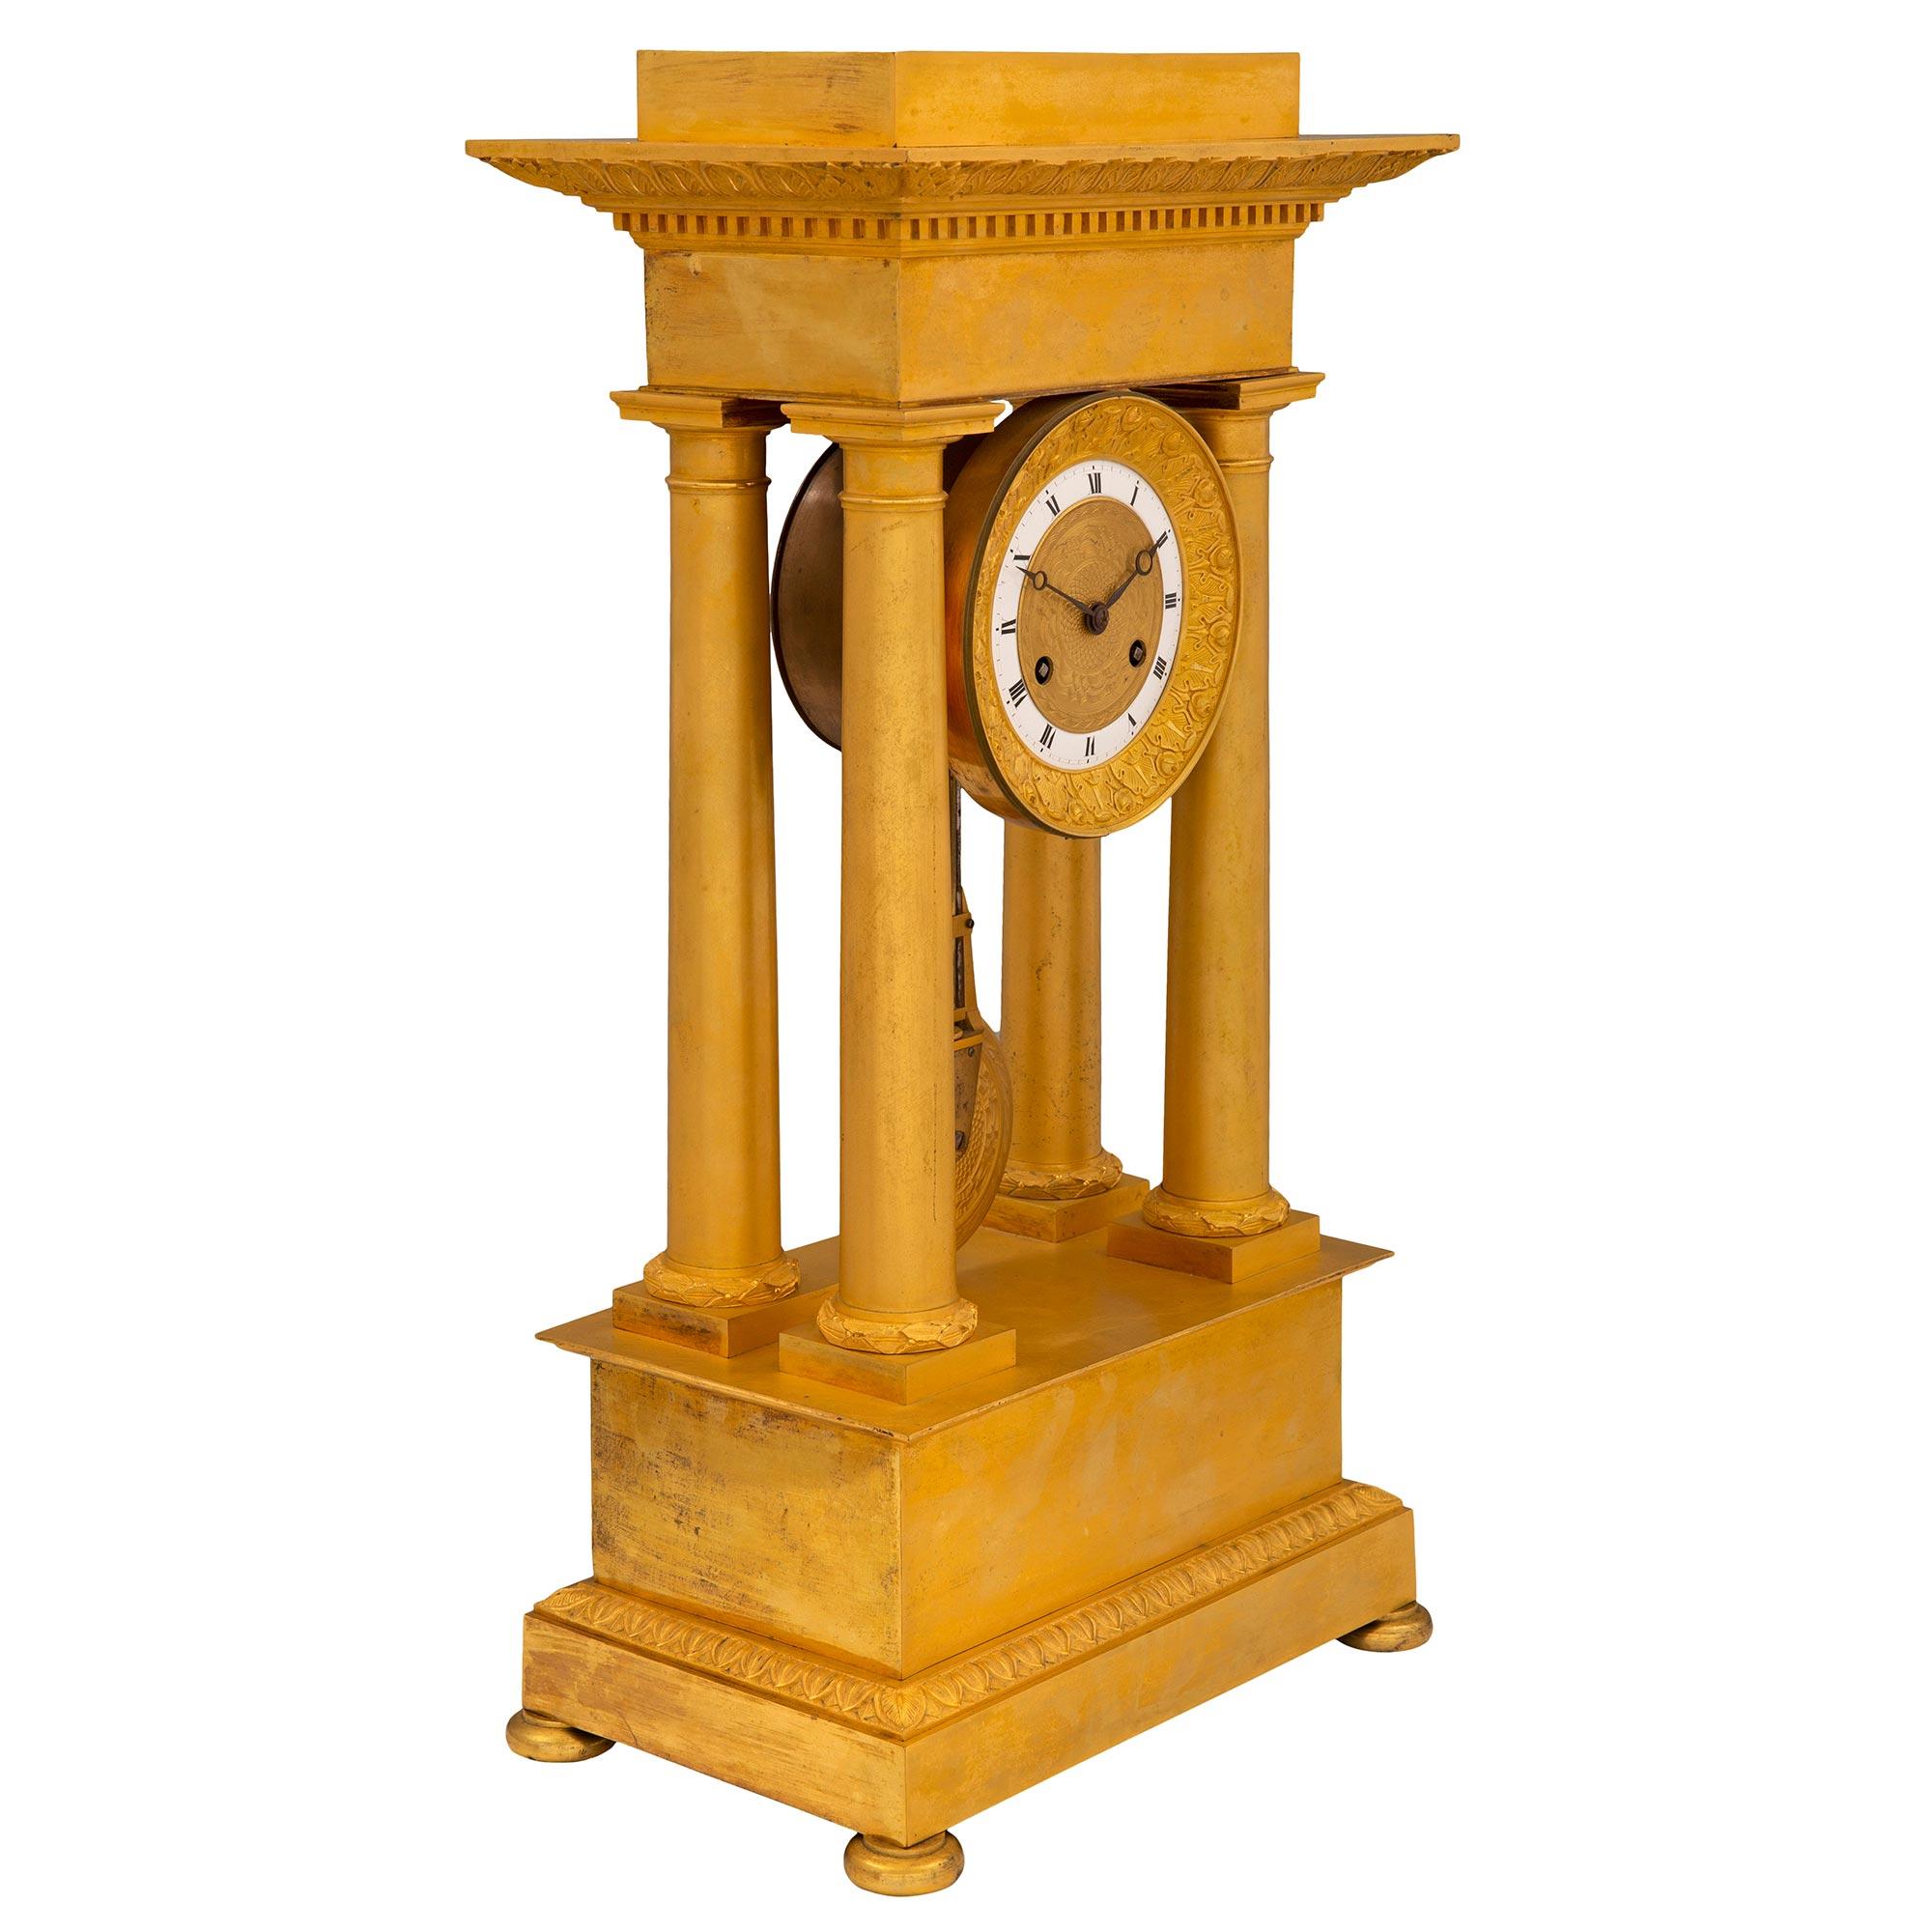 Exceptionnelle pendule à portique en bronze doré d'époque Charles X, datant du milieu du XIXe siècle. L'horloge est surélevée par de fins pieds en forme de chignon sous la base rectangulaire avec un élégant design moucheté et une bande enveloppante